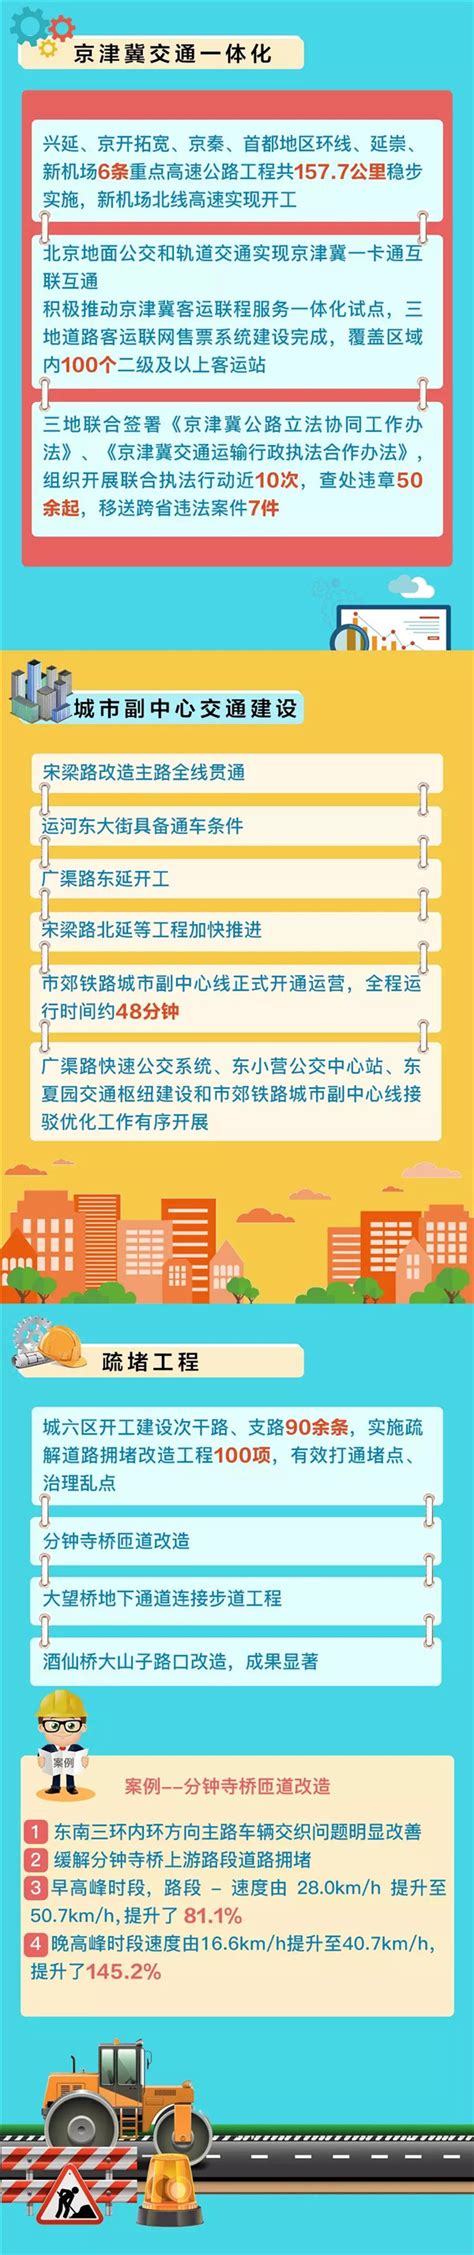 北京地铁线路图2019_北京地铁线路图高清版 - 随意云